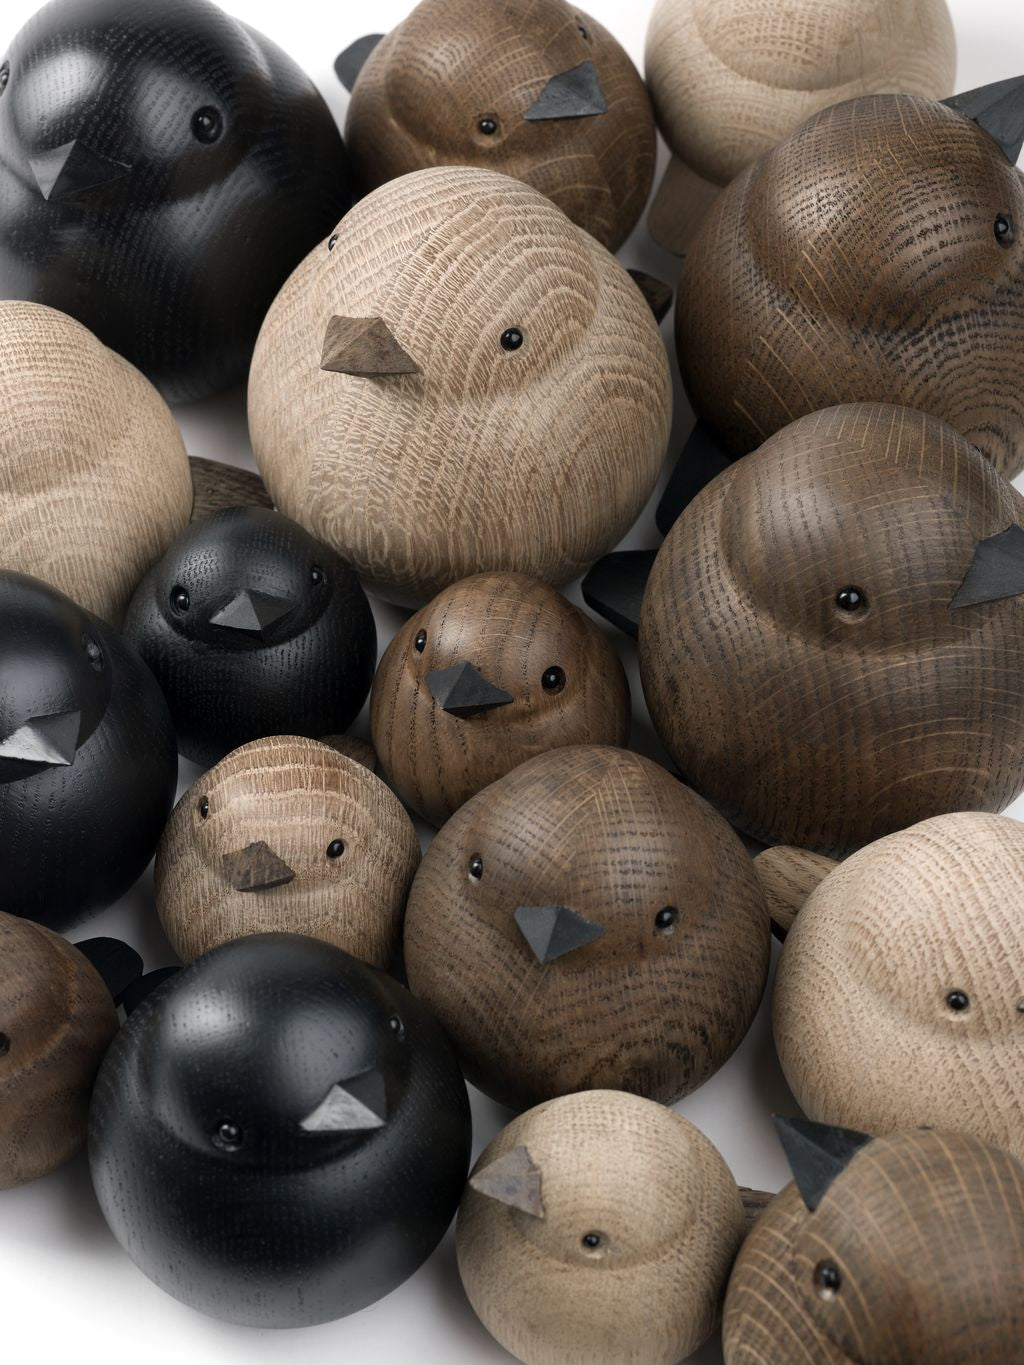 Novoform Design Mini Sparrow Decorative Figure, Black Stained Oak